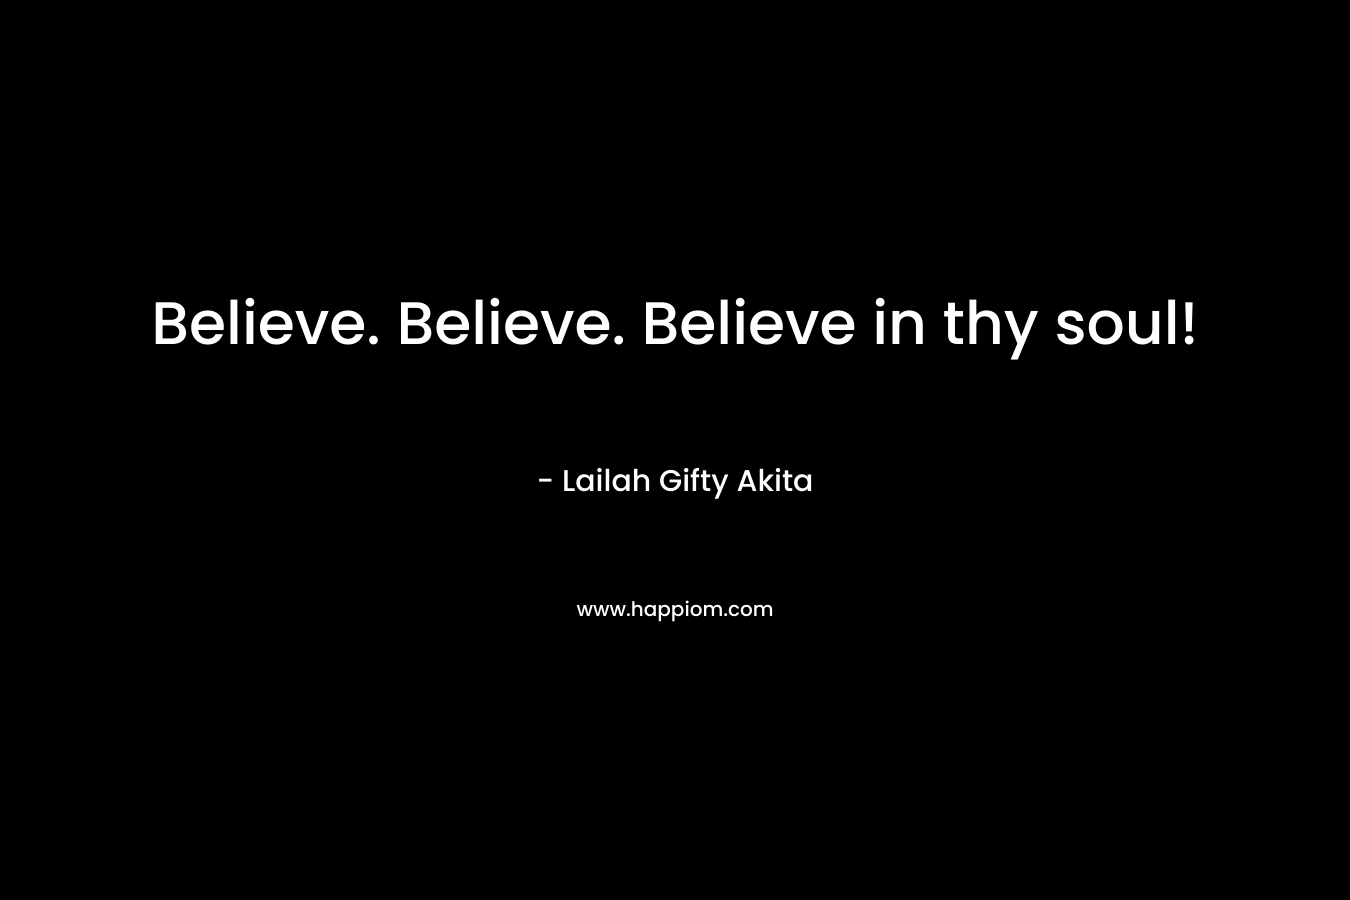 Believe. Believe. Believe in thy soul!